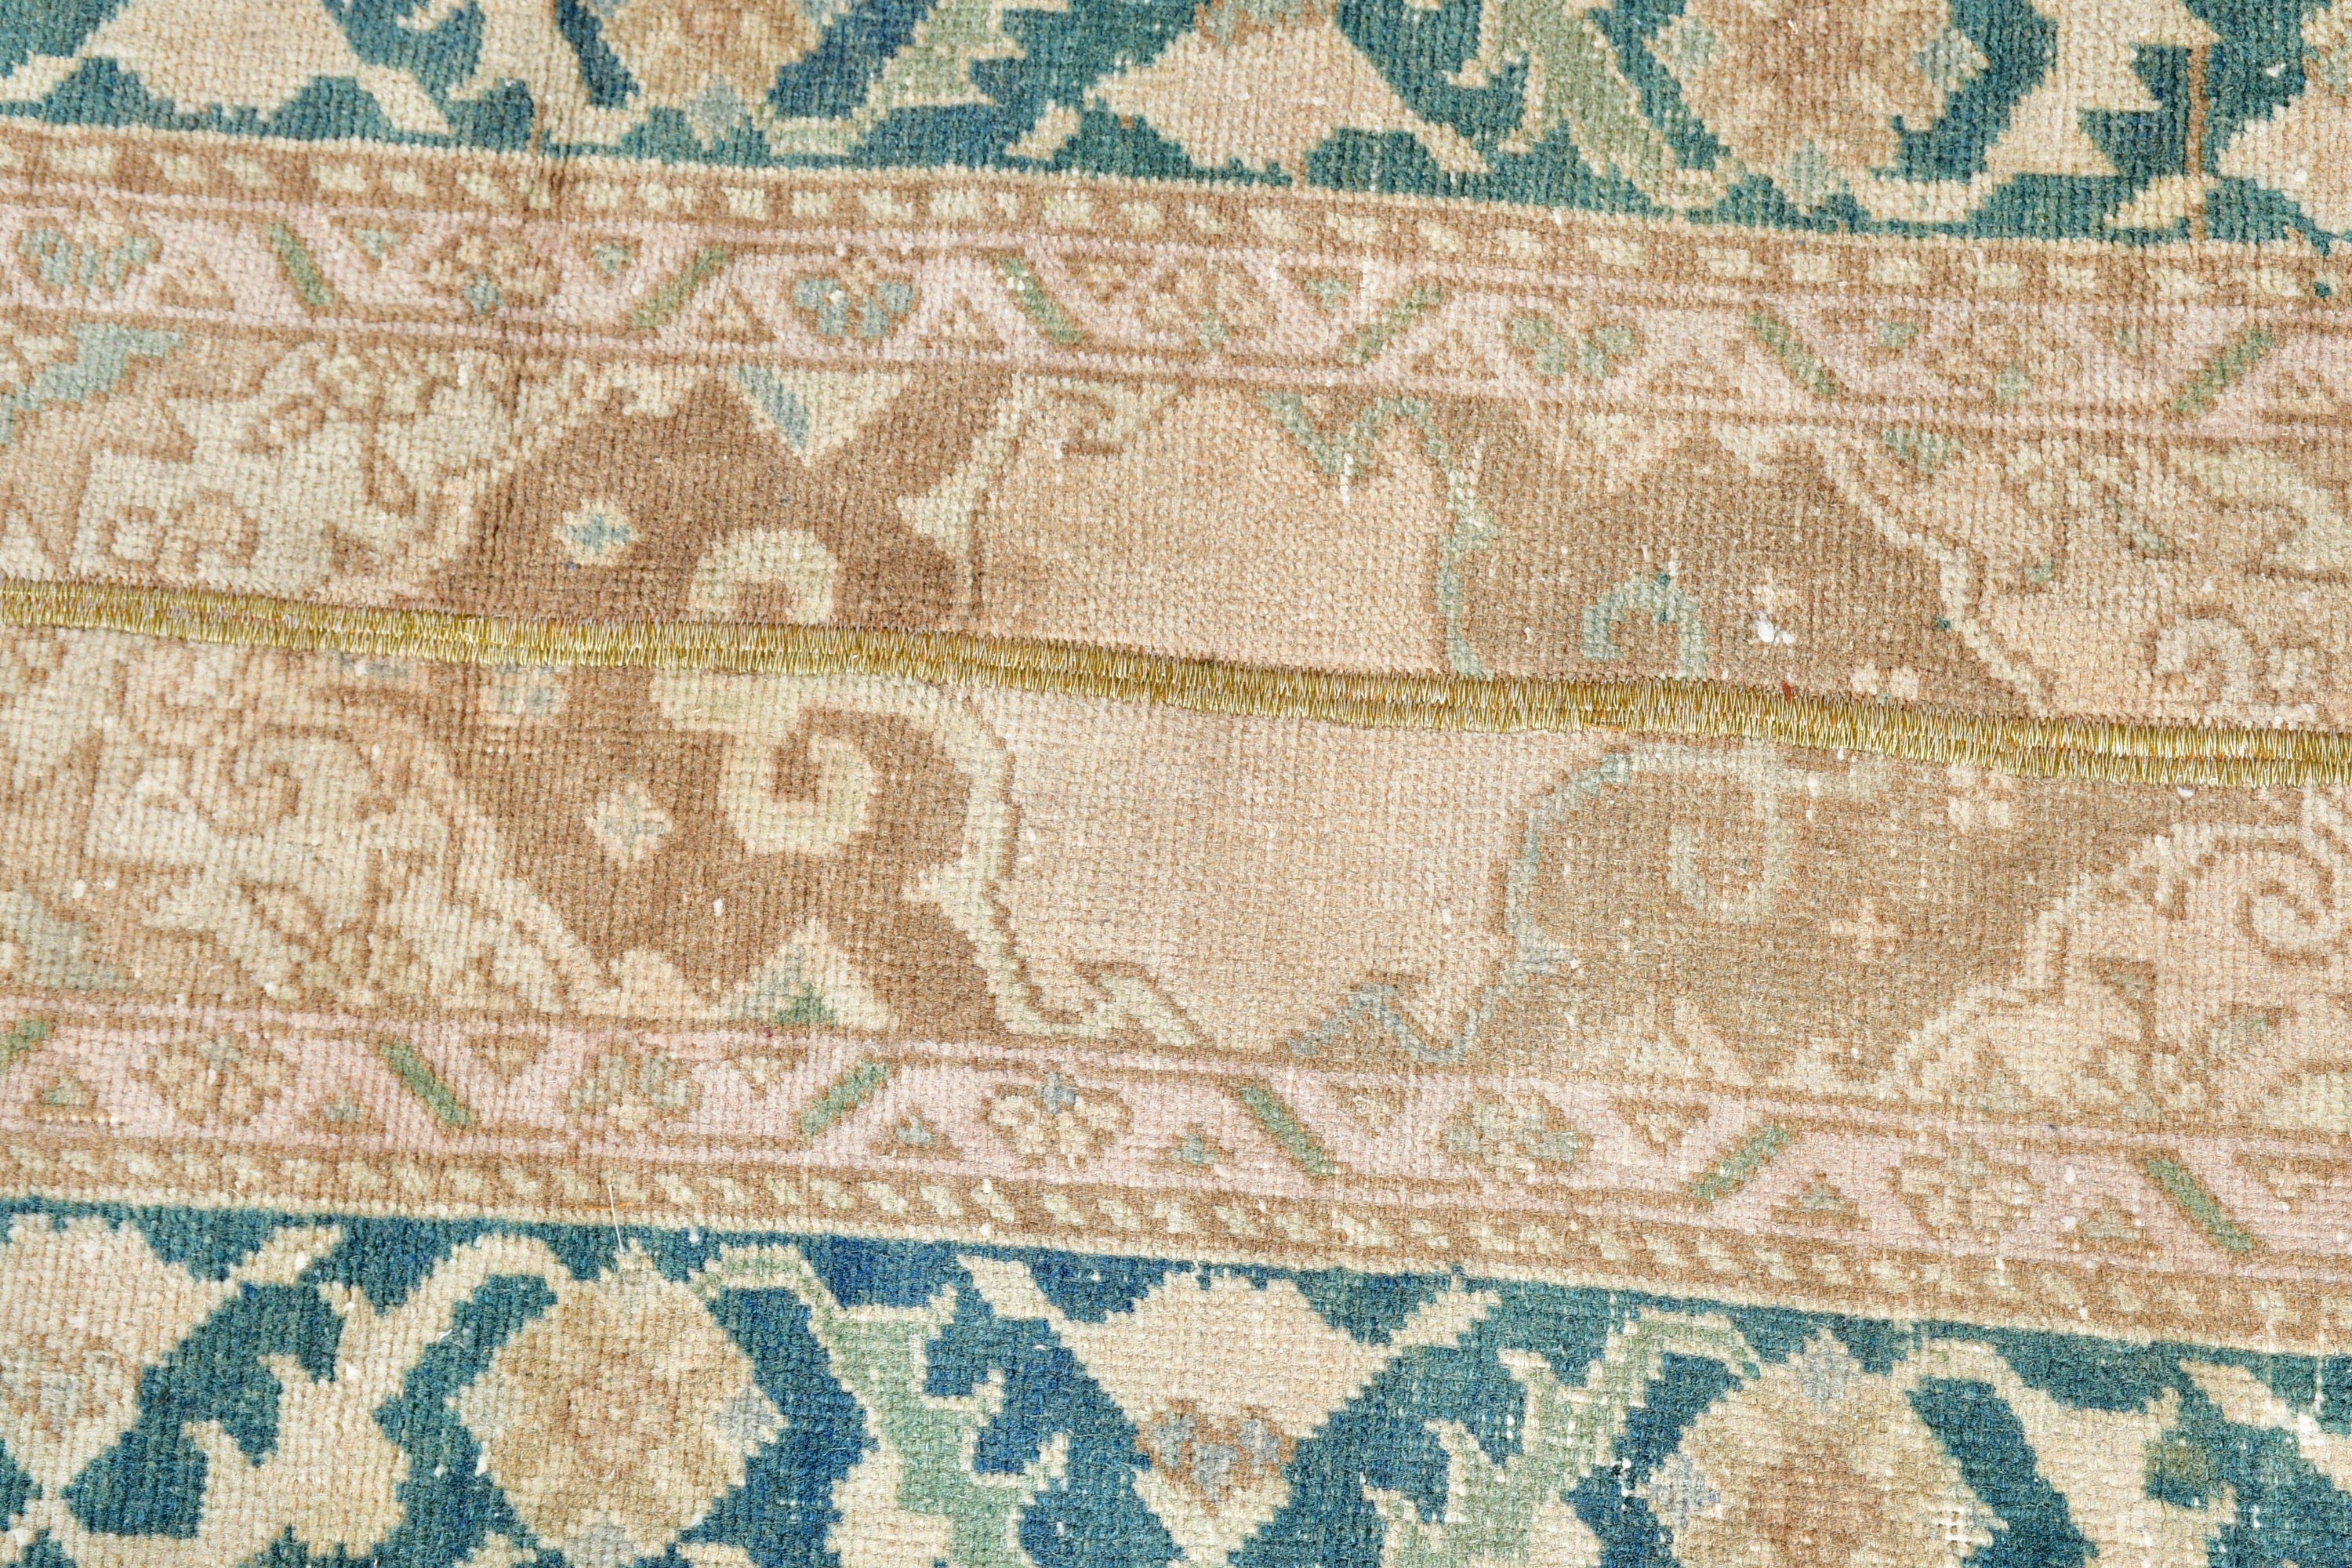 Vintage Rug, Rugs for Corridor, Organic Rug, Floor Rugs, Kitchen Rugs, Turkish Rug, 2x7.3 ft Runner Rugs, Oriental Rugs, Brown Bedroom Rug